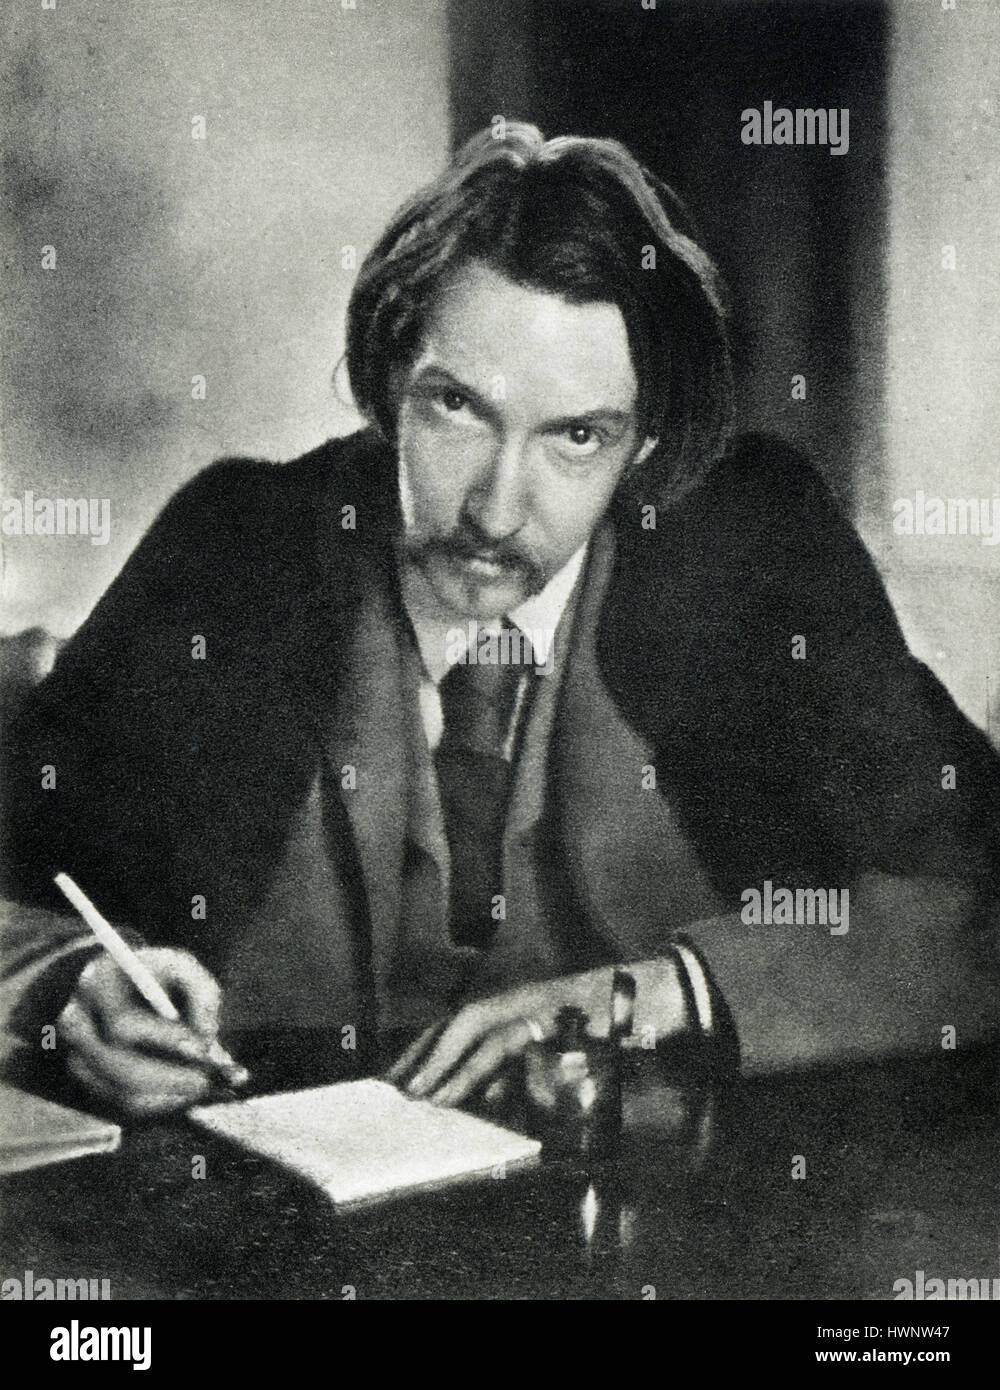 Robert Louis Stevenson, 1885 portrait photographique de l'auteur populaire de l'île au trésor, à l'âge de 35 dans sa toge universitaire Banque D'Images